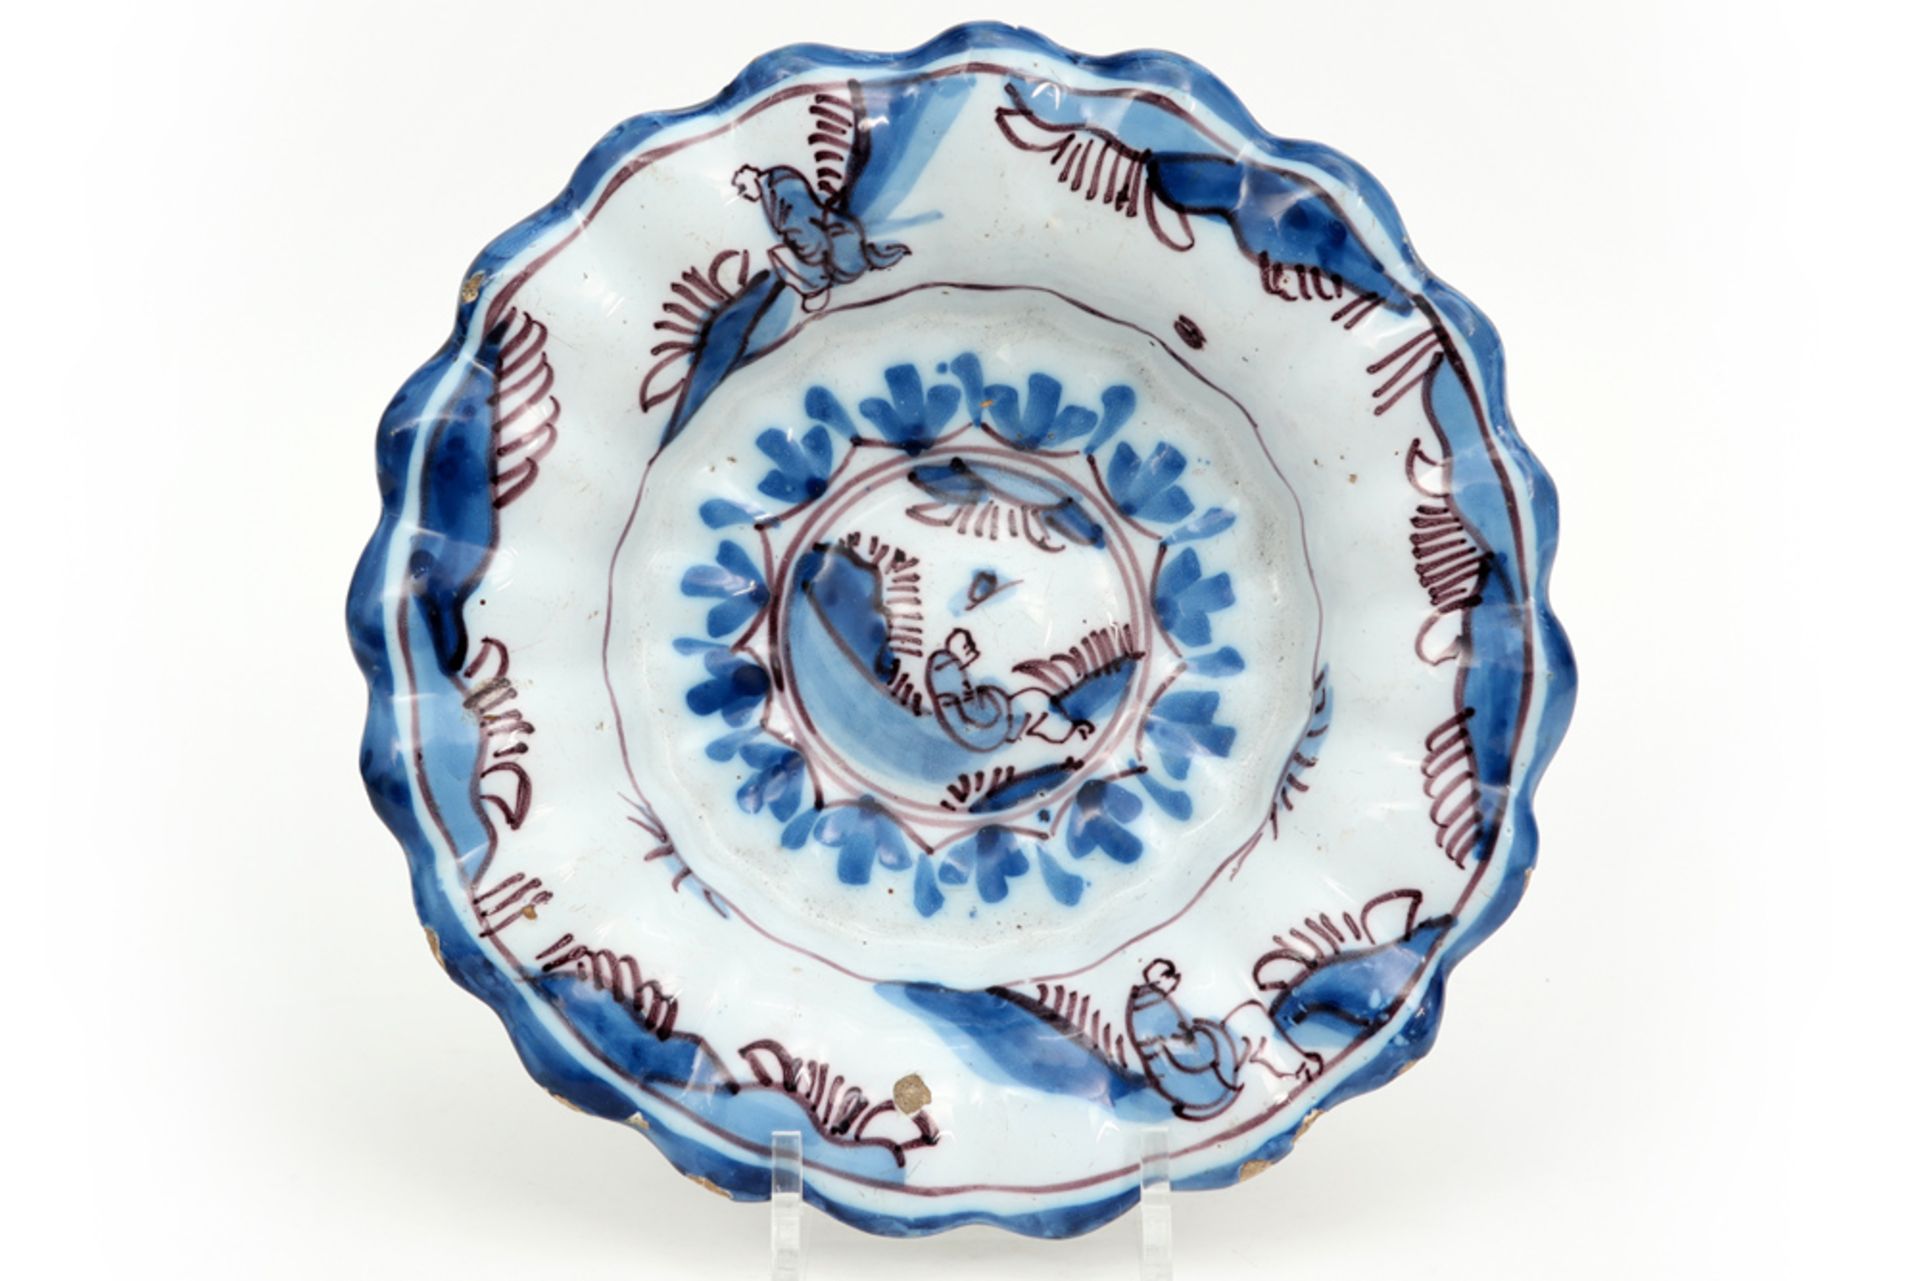 quite rare17th/18th Cent. dish in ceramic from Delft || Vrij zeldzaam zeventiende/achttiende eeuws